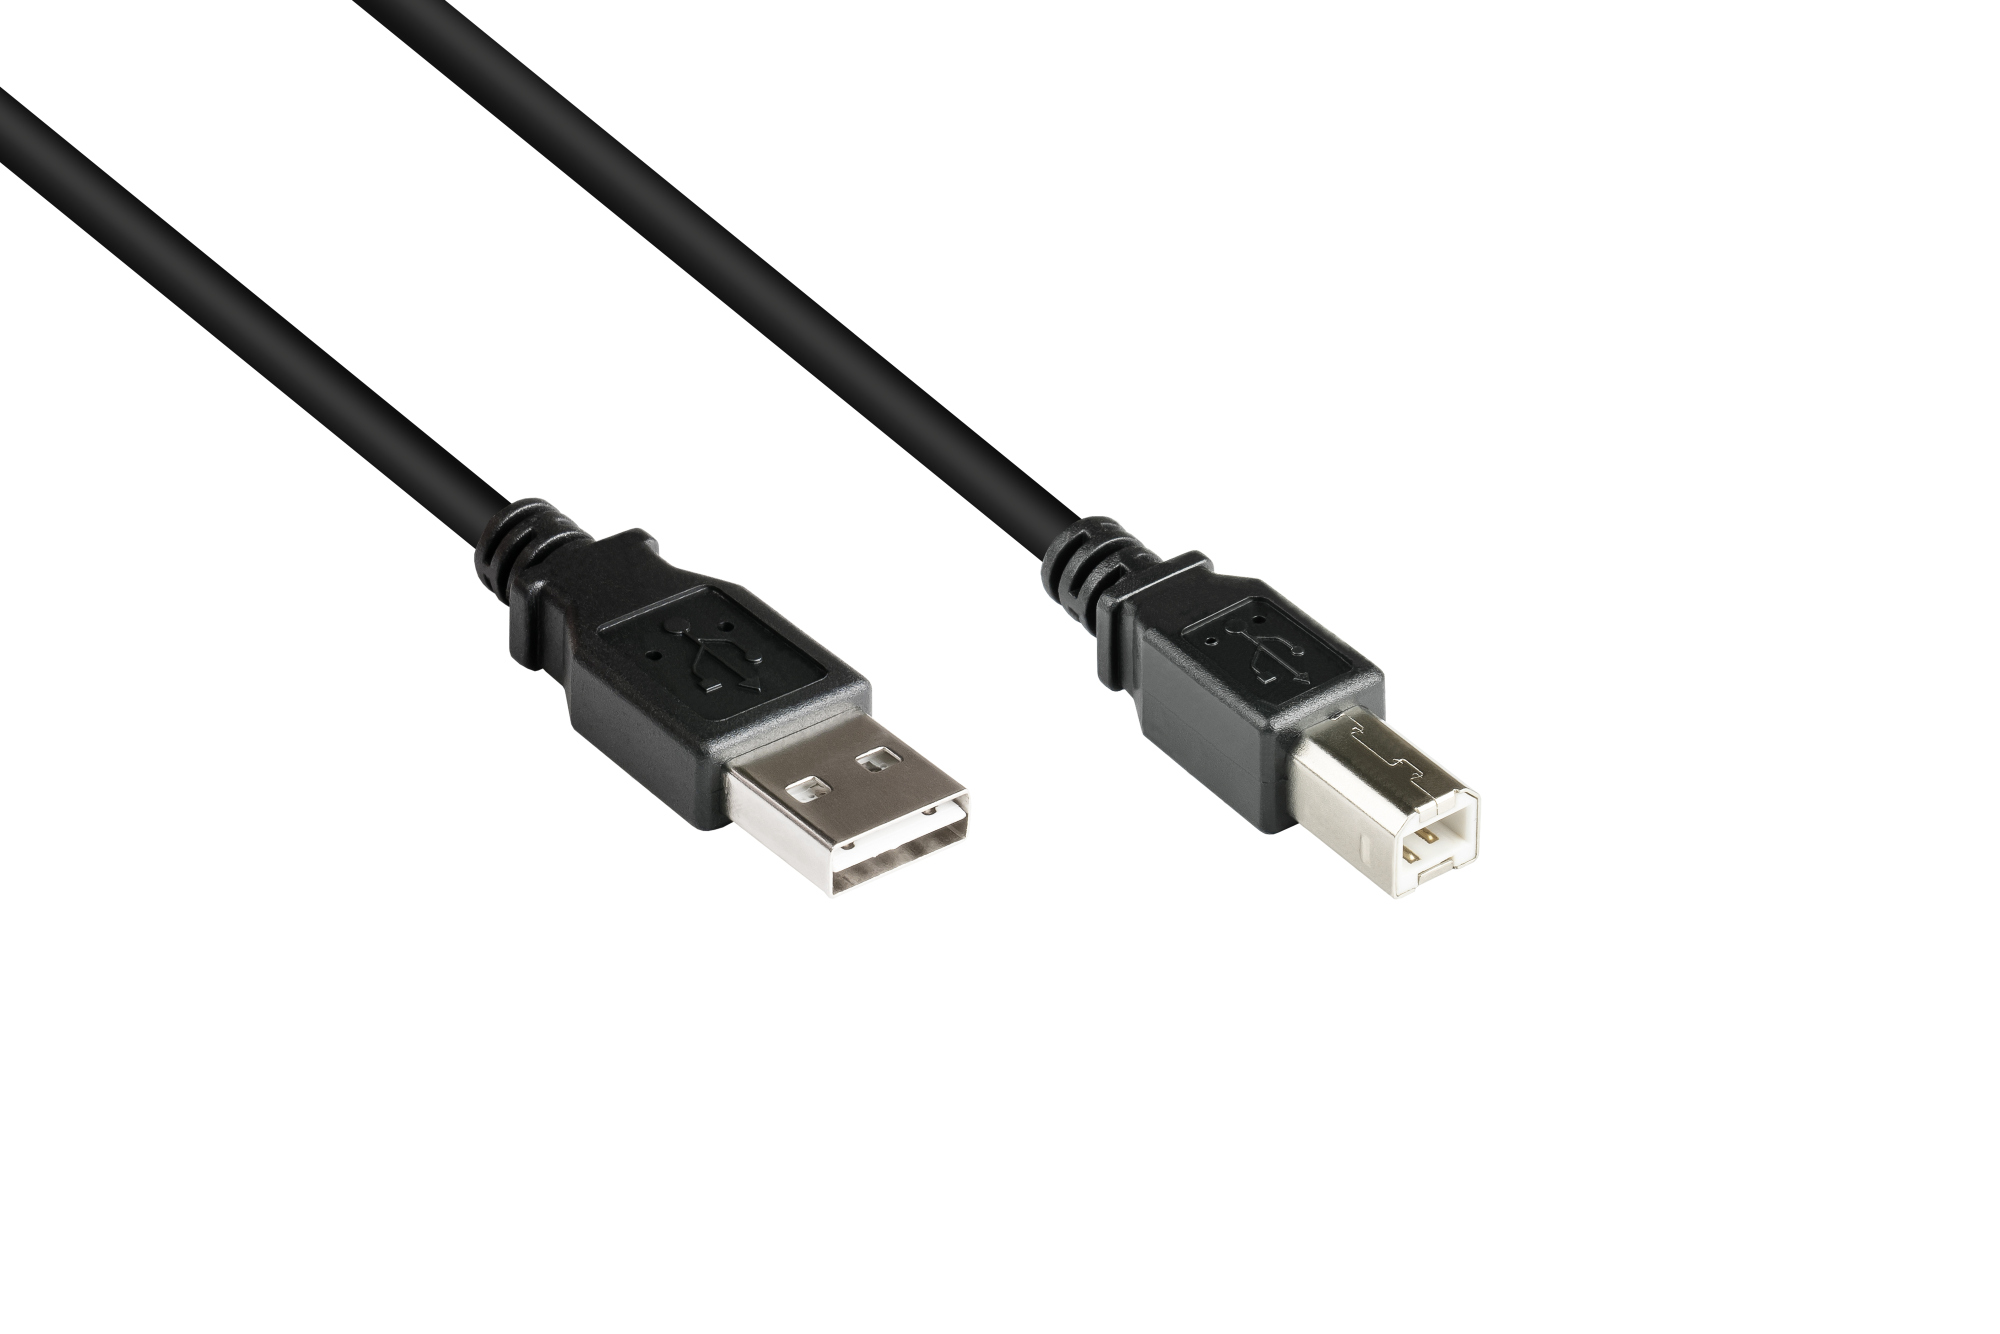 Anschlusskabel USB 2.0 EASY Stecker A an Stecker B, schwarz, 1m